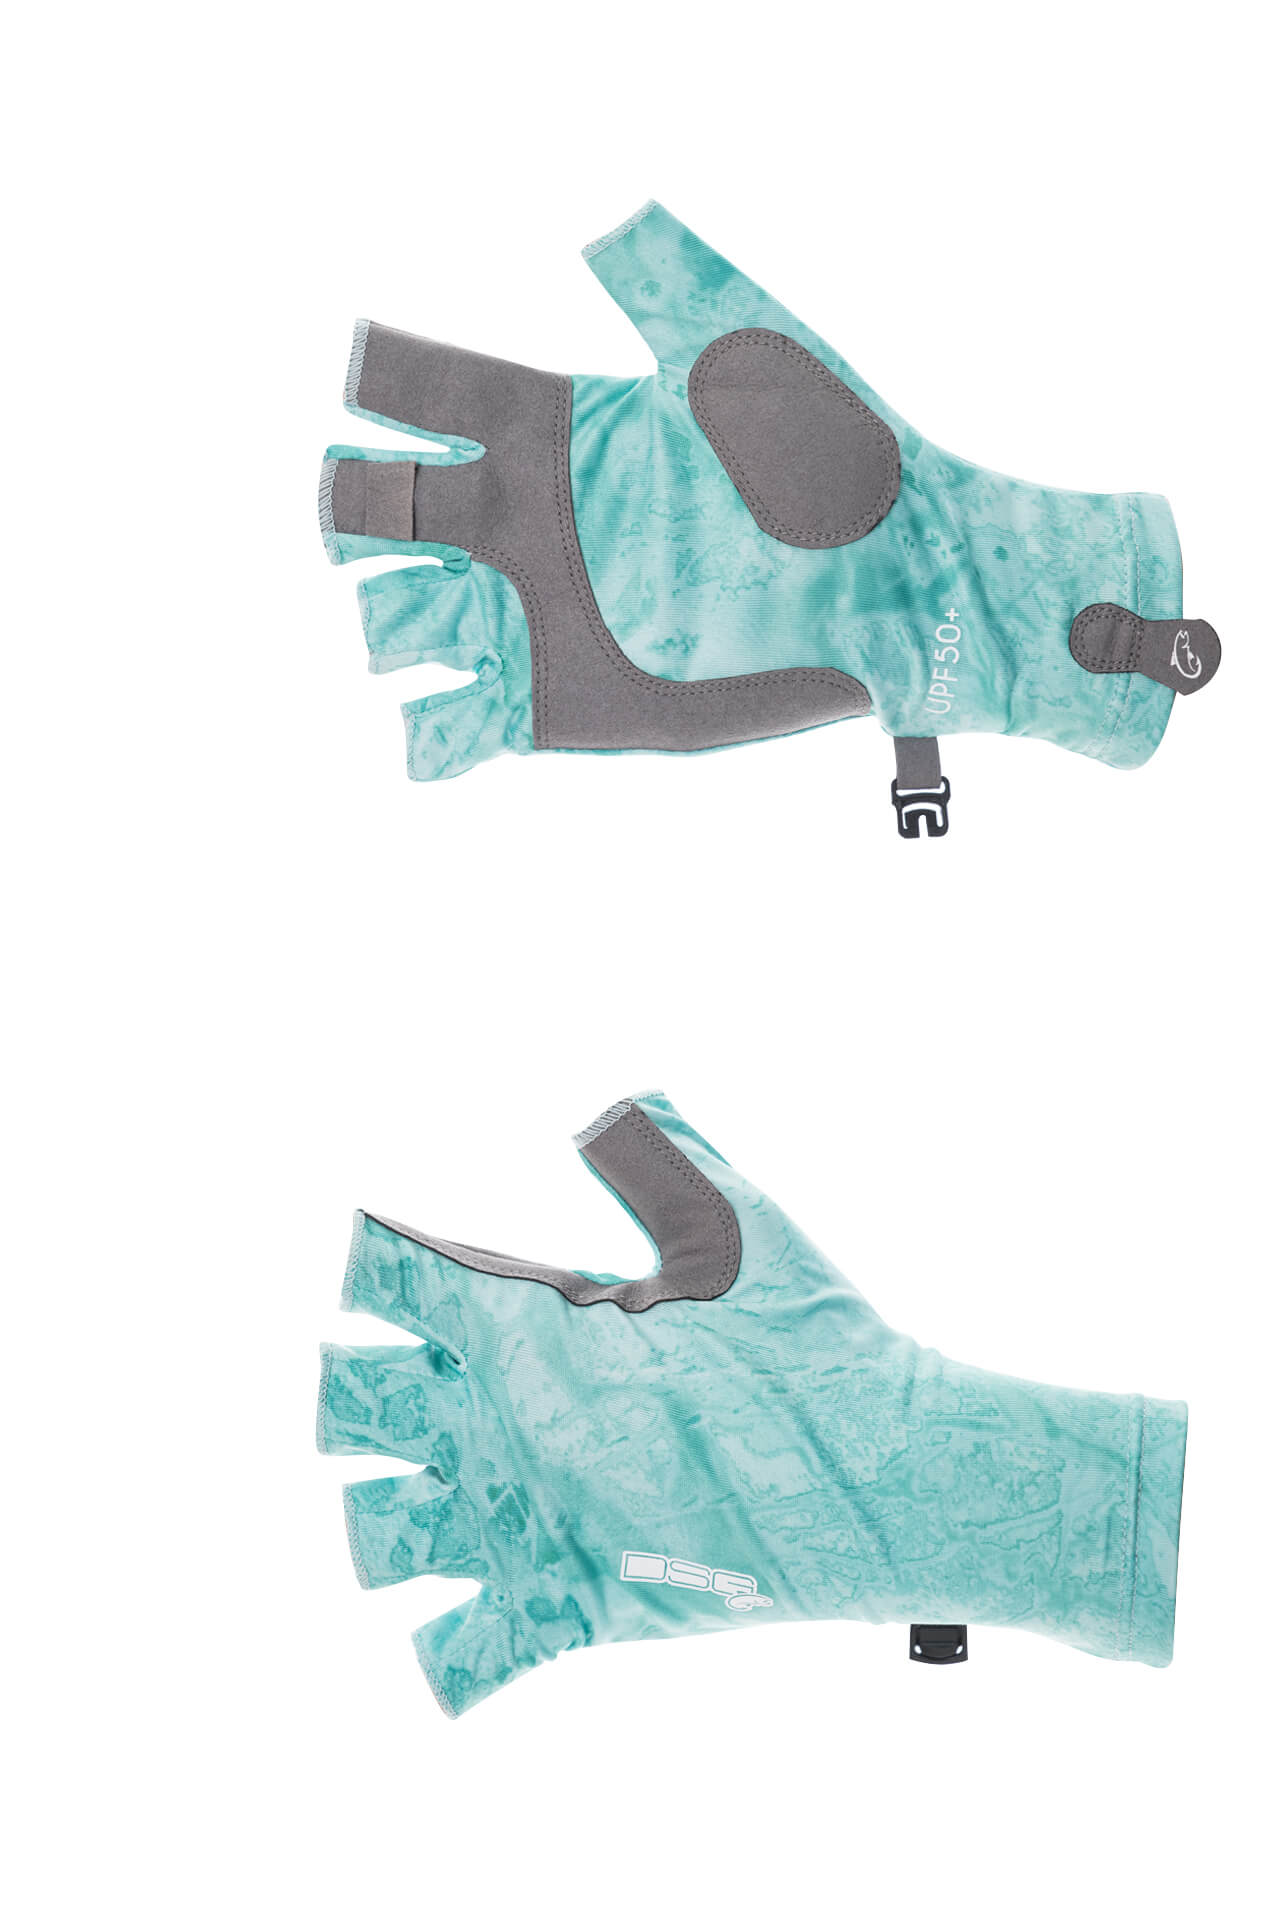 Fingerless Fishing Gloves for sale